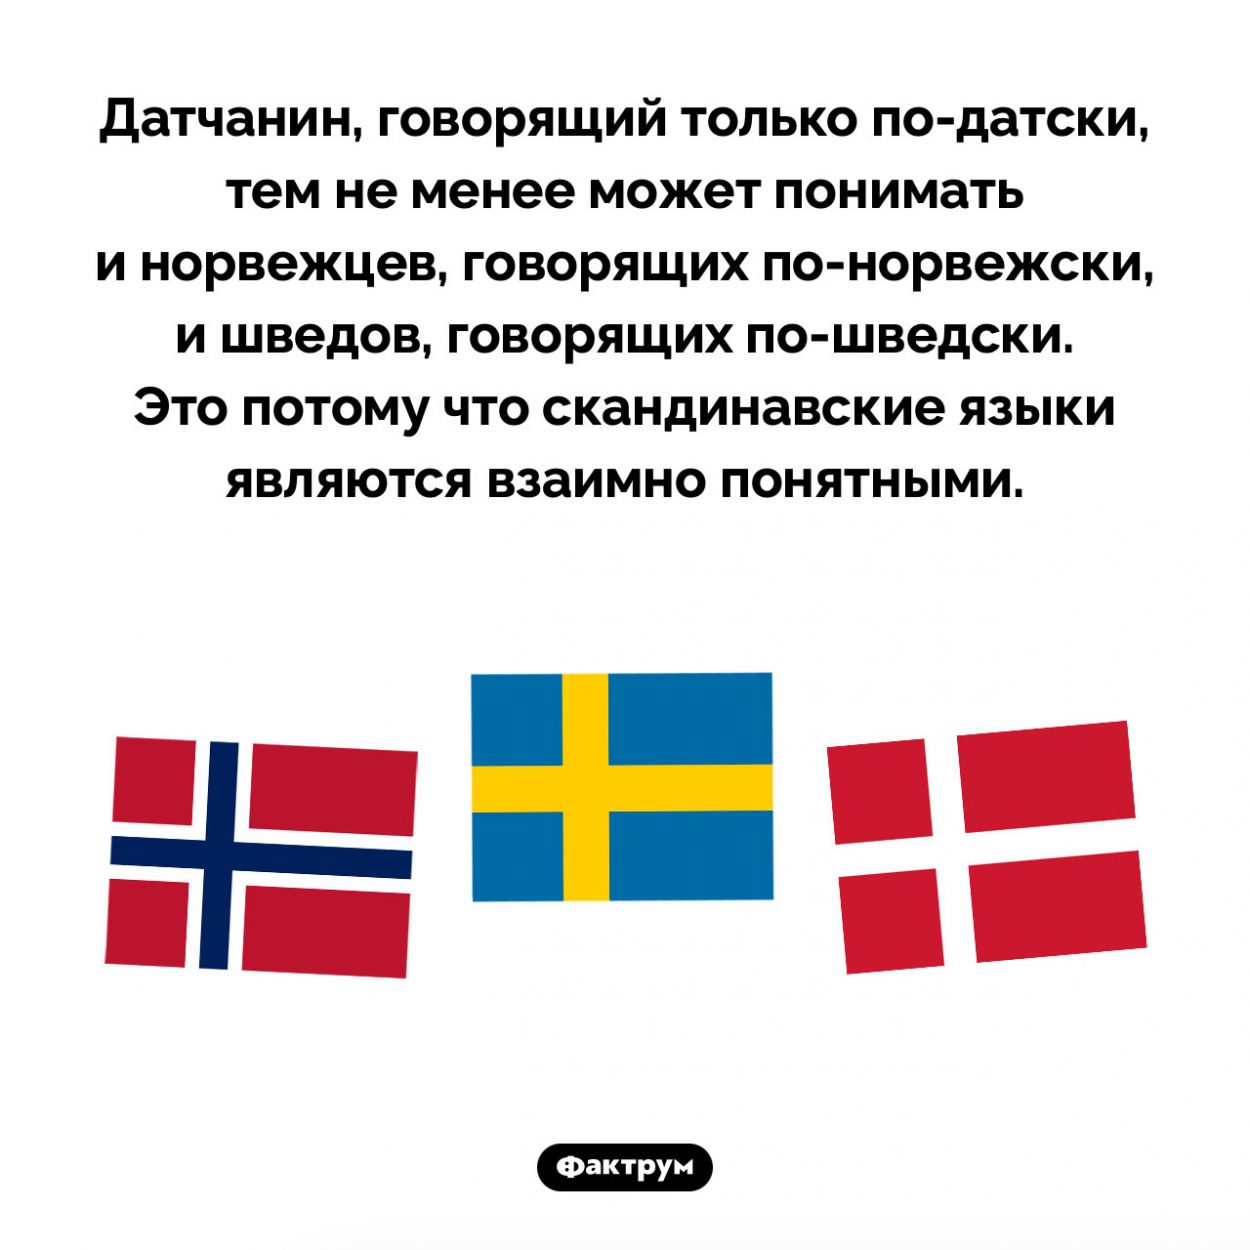 Датчанине понимают норвежцев и наоборот. Датчанин, говорящий только <nobr>по-датски</nobr>, тем не менее может понимать и норвежцев, говорящих <nobr>по-норвежски</nobr>, и шведов, говорящих <nobr>по-шведски</nobr>. Это потому что скандинавские языки являются взаимно понятными.